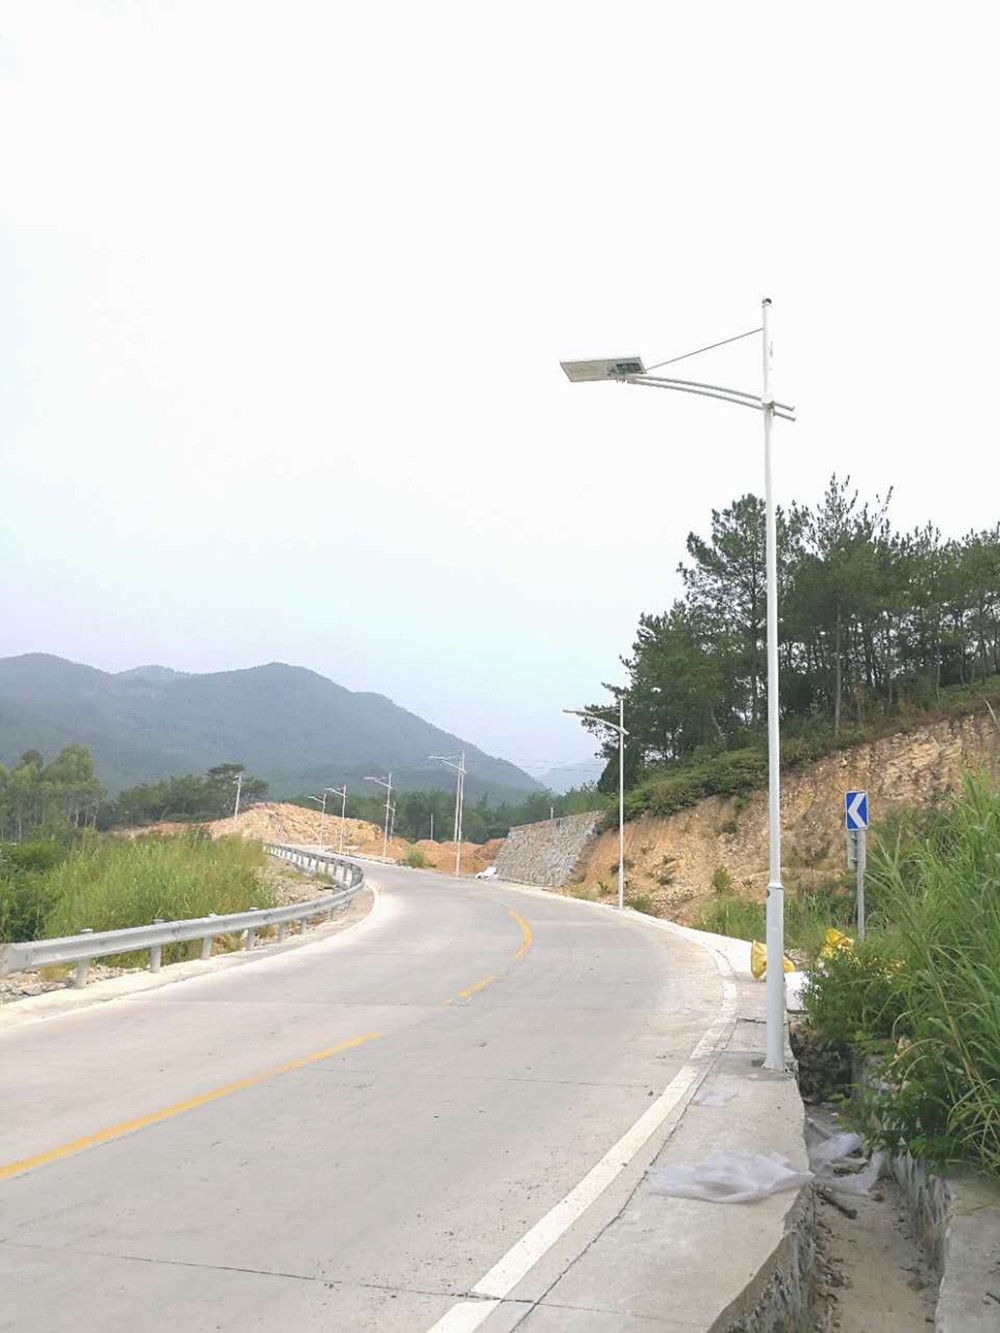 Lampu jalanan LED, proyek lampu tiang tinggi dari stasiun toll kecepatan tinggi